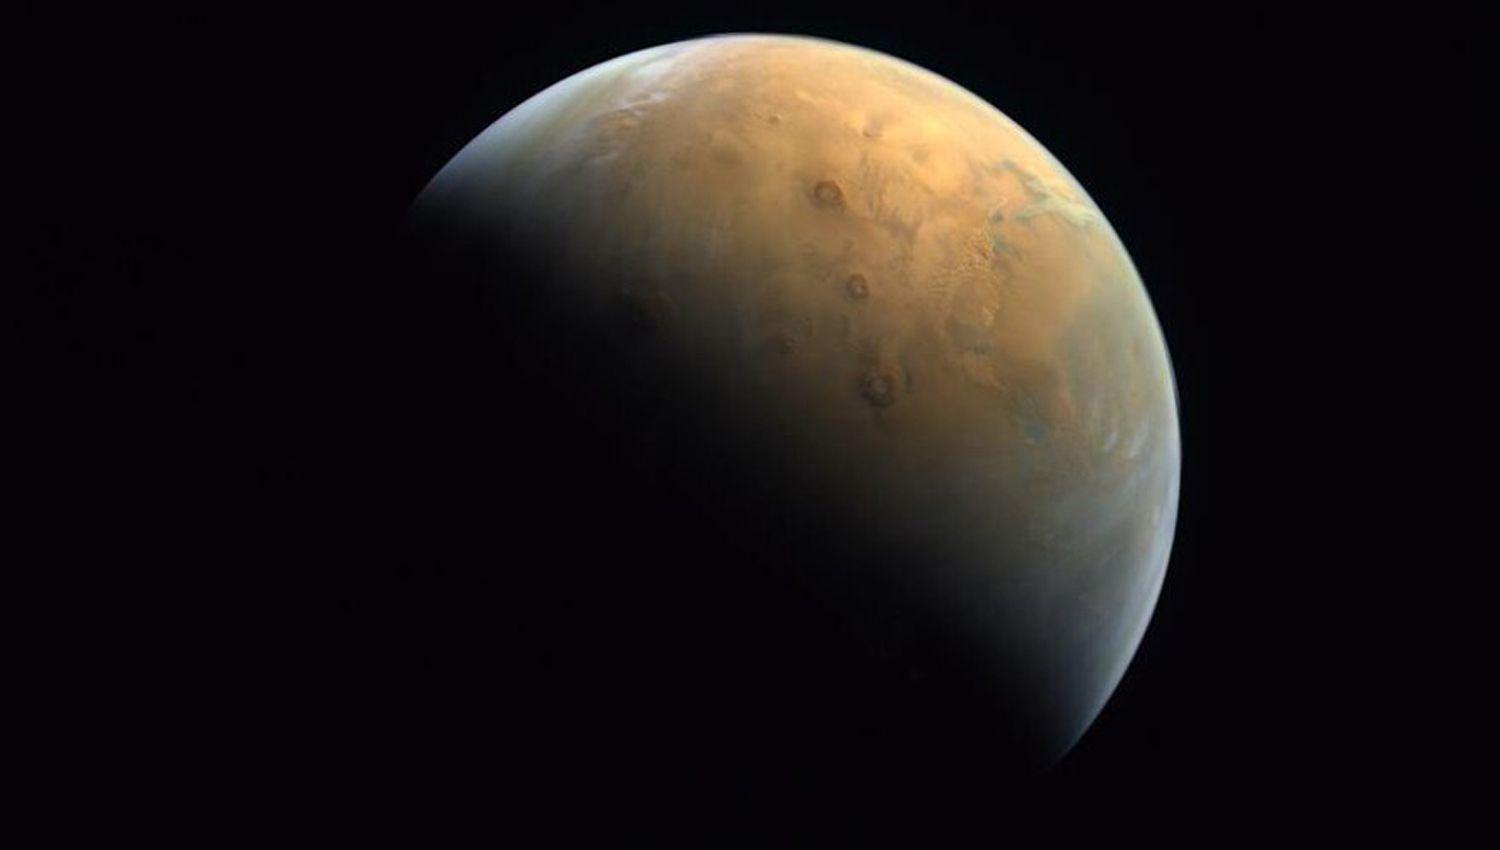 La sonda aacuterabe ldquoEsperanzardquo envioacute su primera imagen de Marte